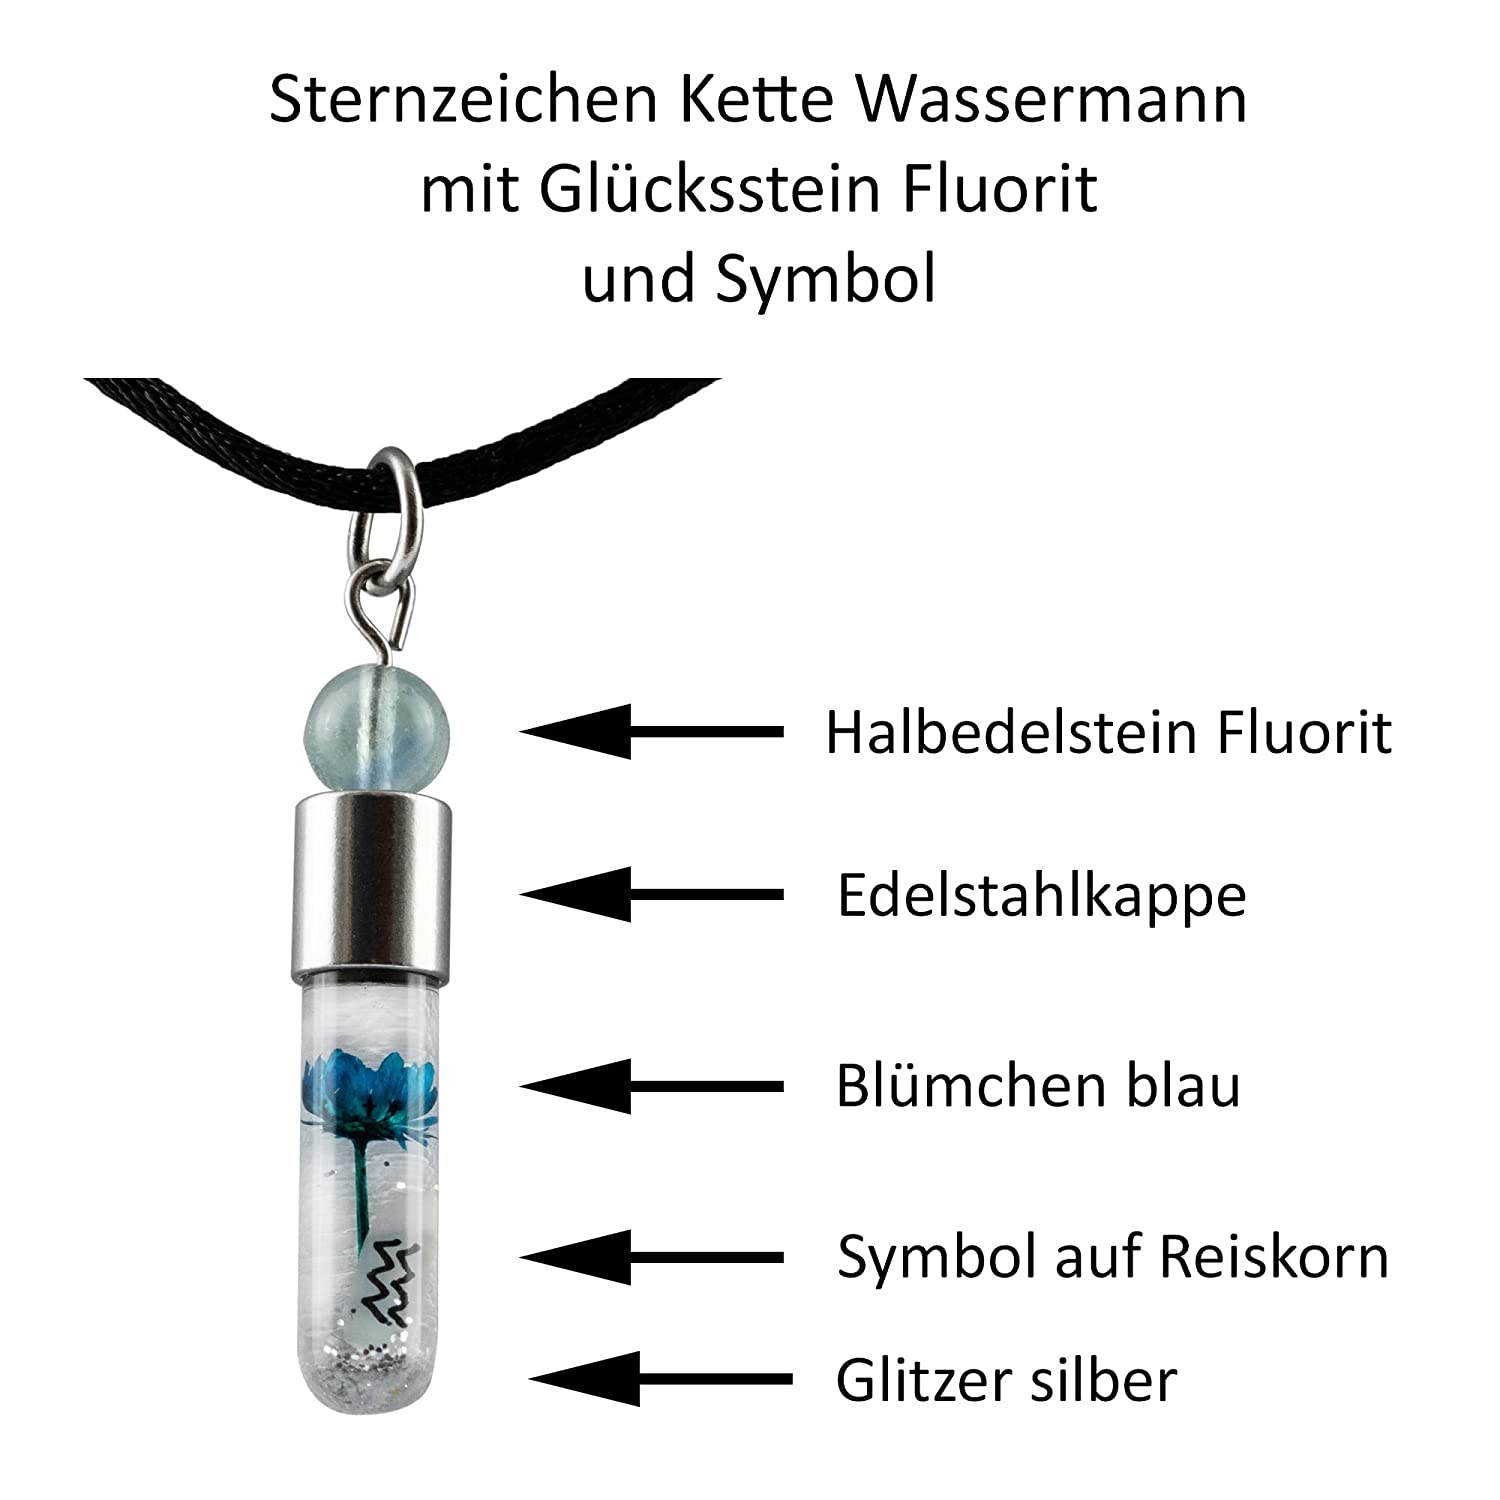 Sternzeichen Wassermann, 21. Januar - 19. Februar, Halskette mit Glücksstein Fluorit und Sternzeichensymbol